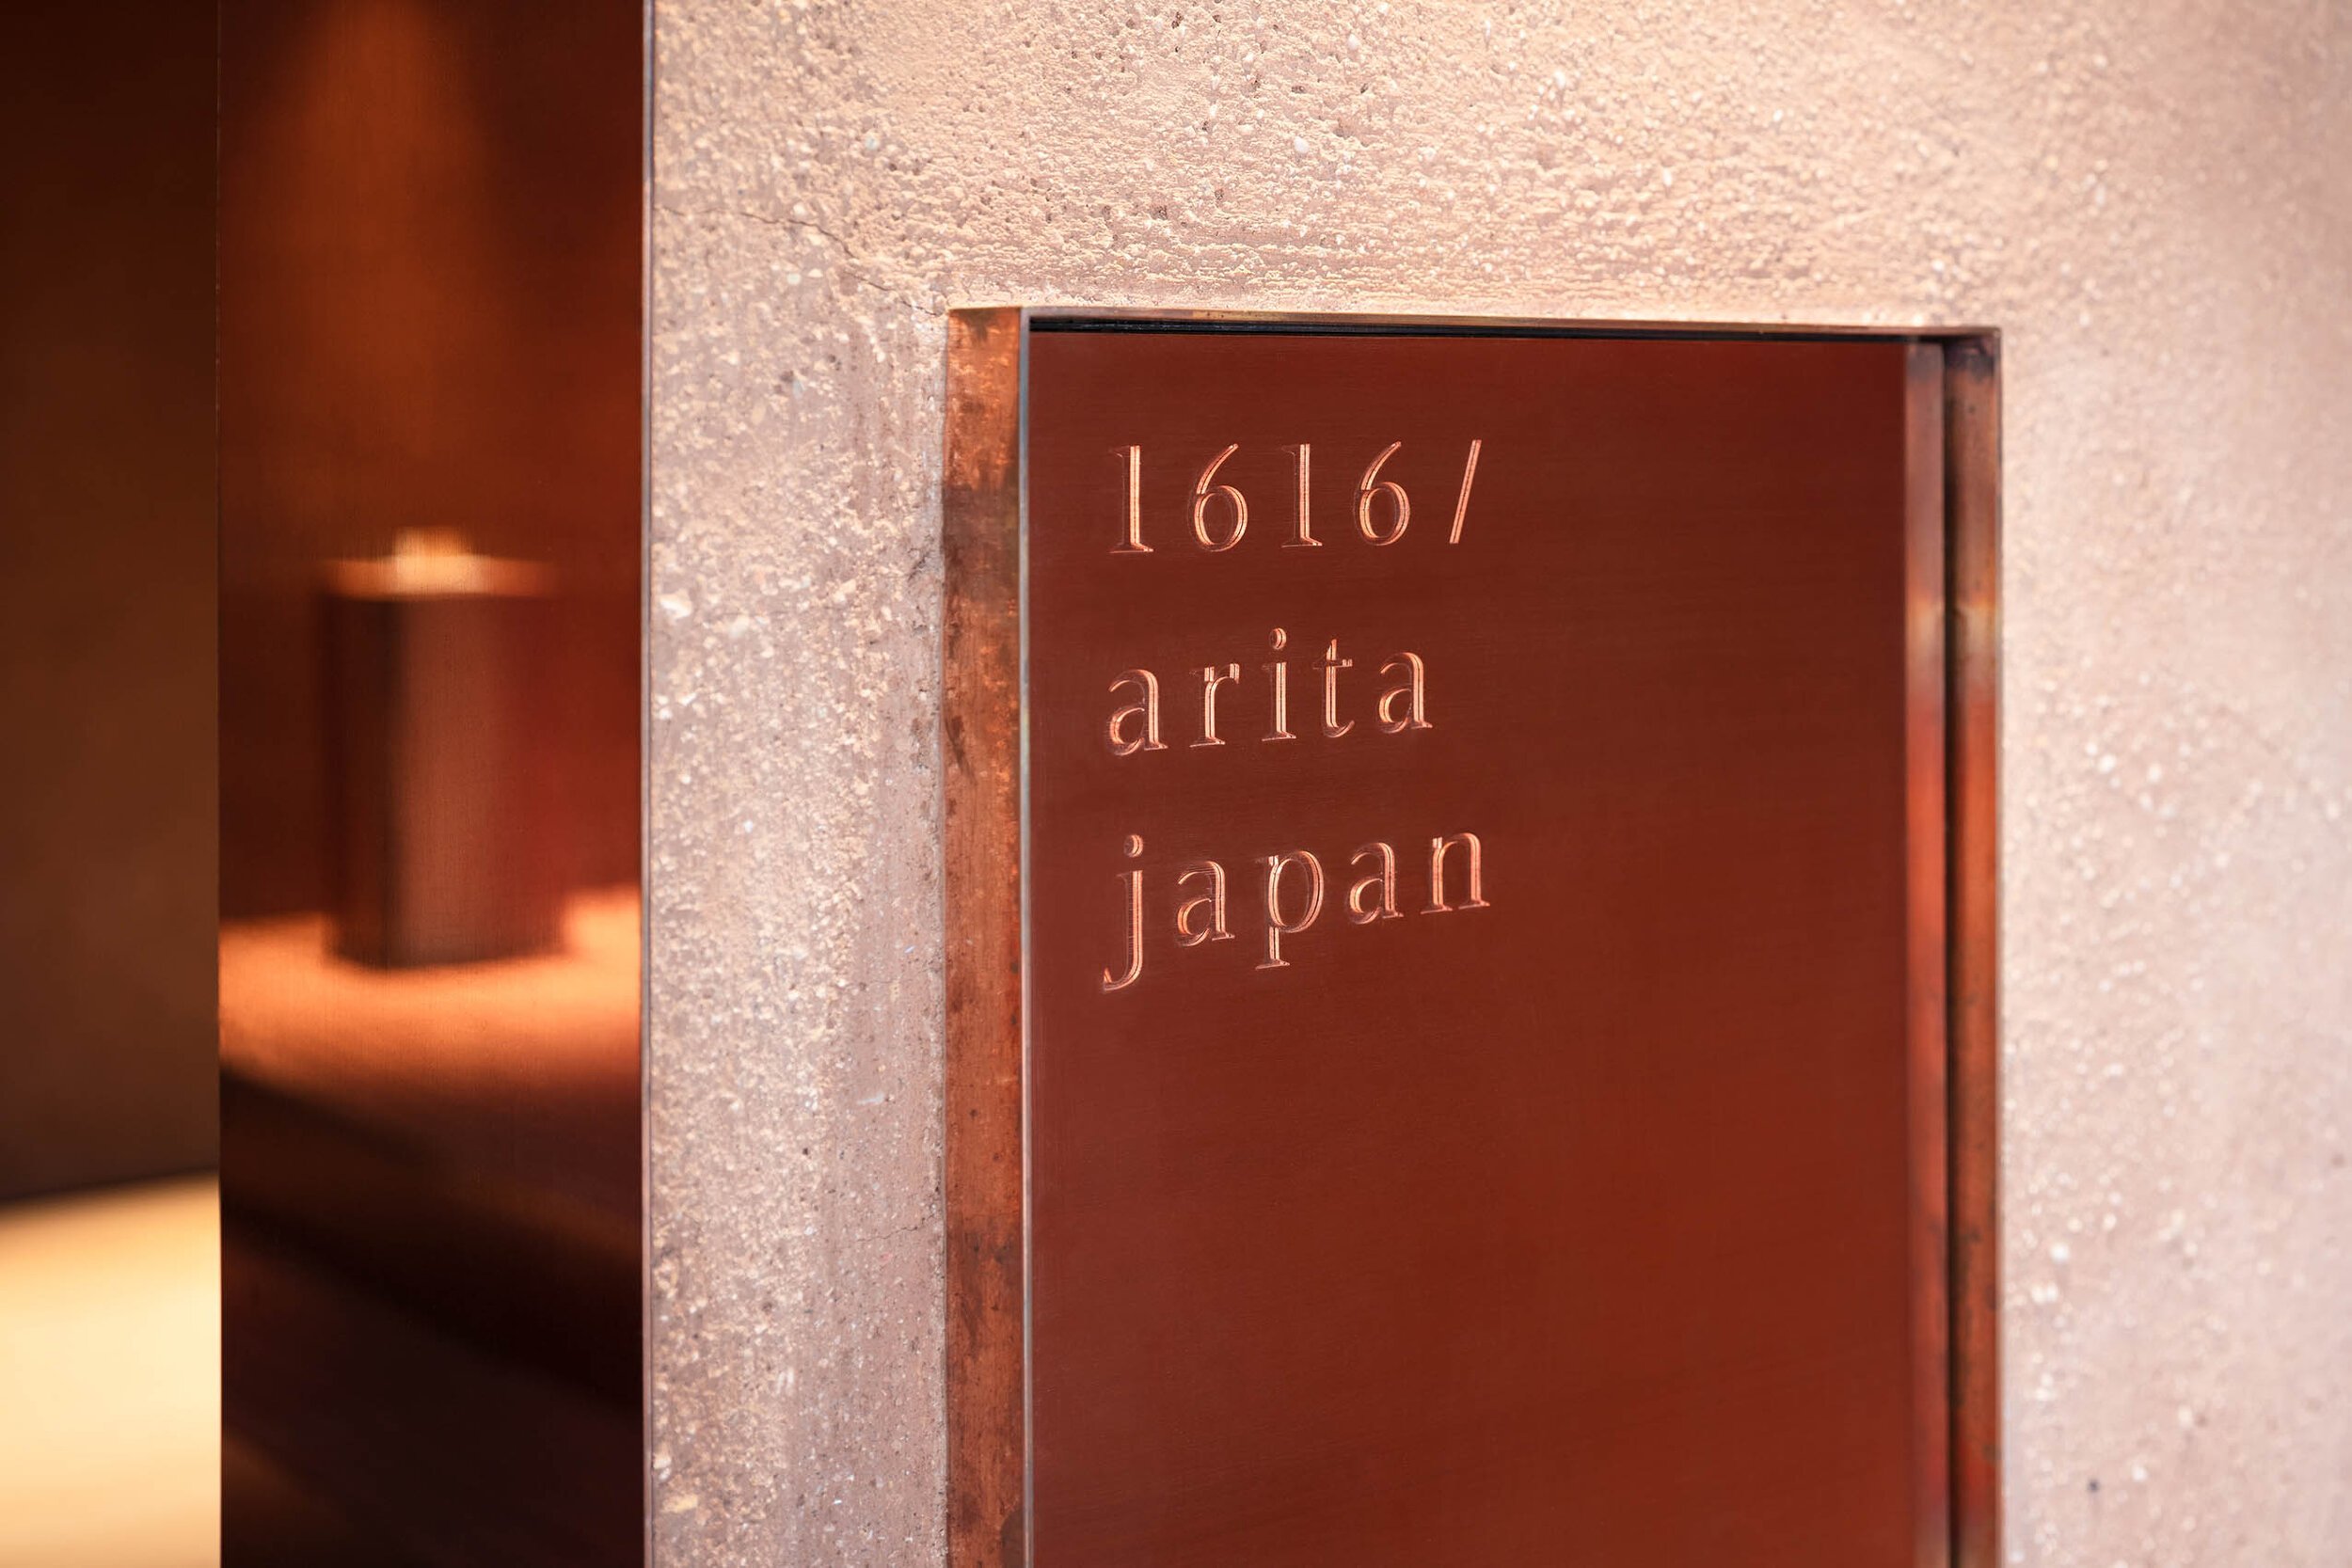  TERUHIRO YANAGIHARA STUDIOの柳原照弘がデザインした1616/arita japan 有田ショールームのサイン 